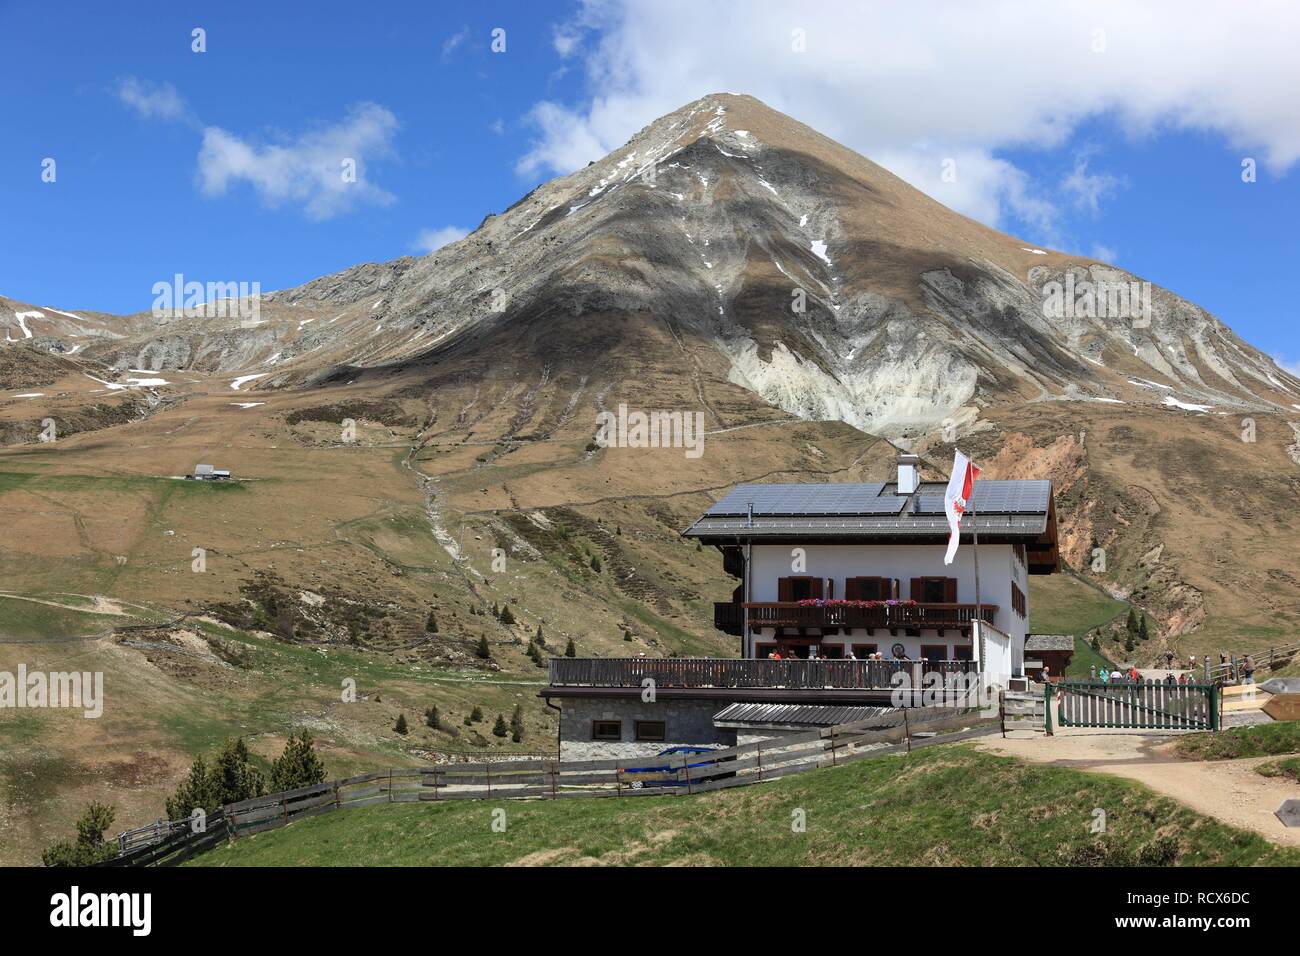 Hütte auf dem Kirchsteiger Alm Alm in der Nähe von Meran, Südtirol, Italien, Europa Stockfoto